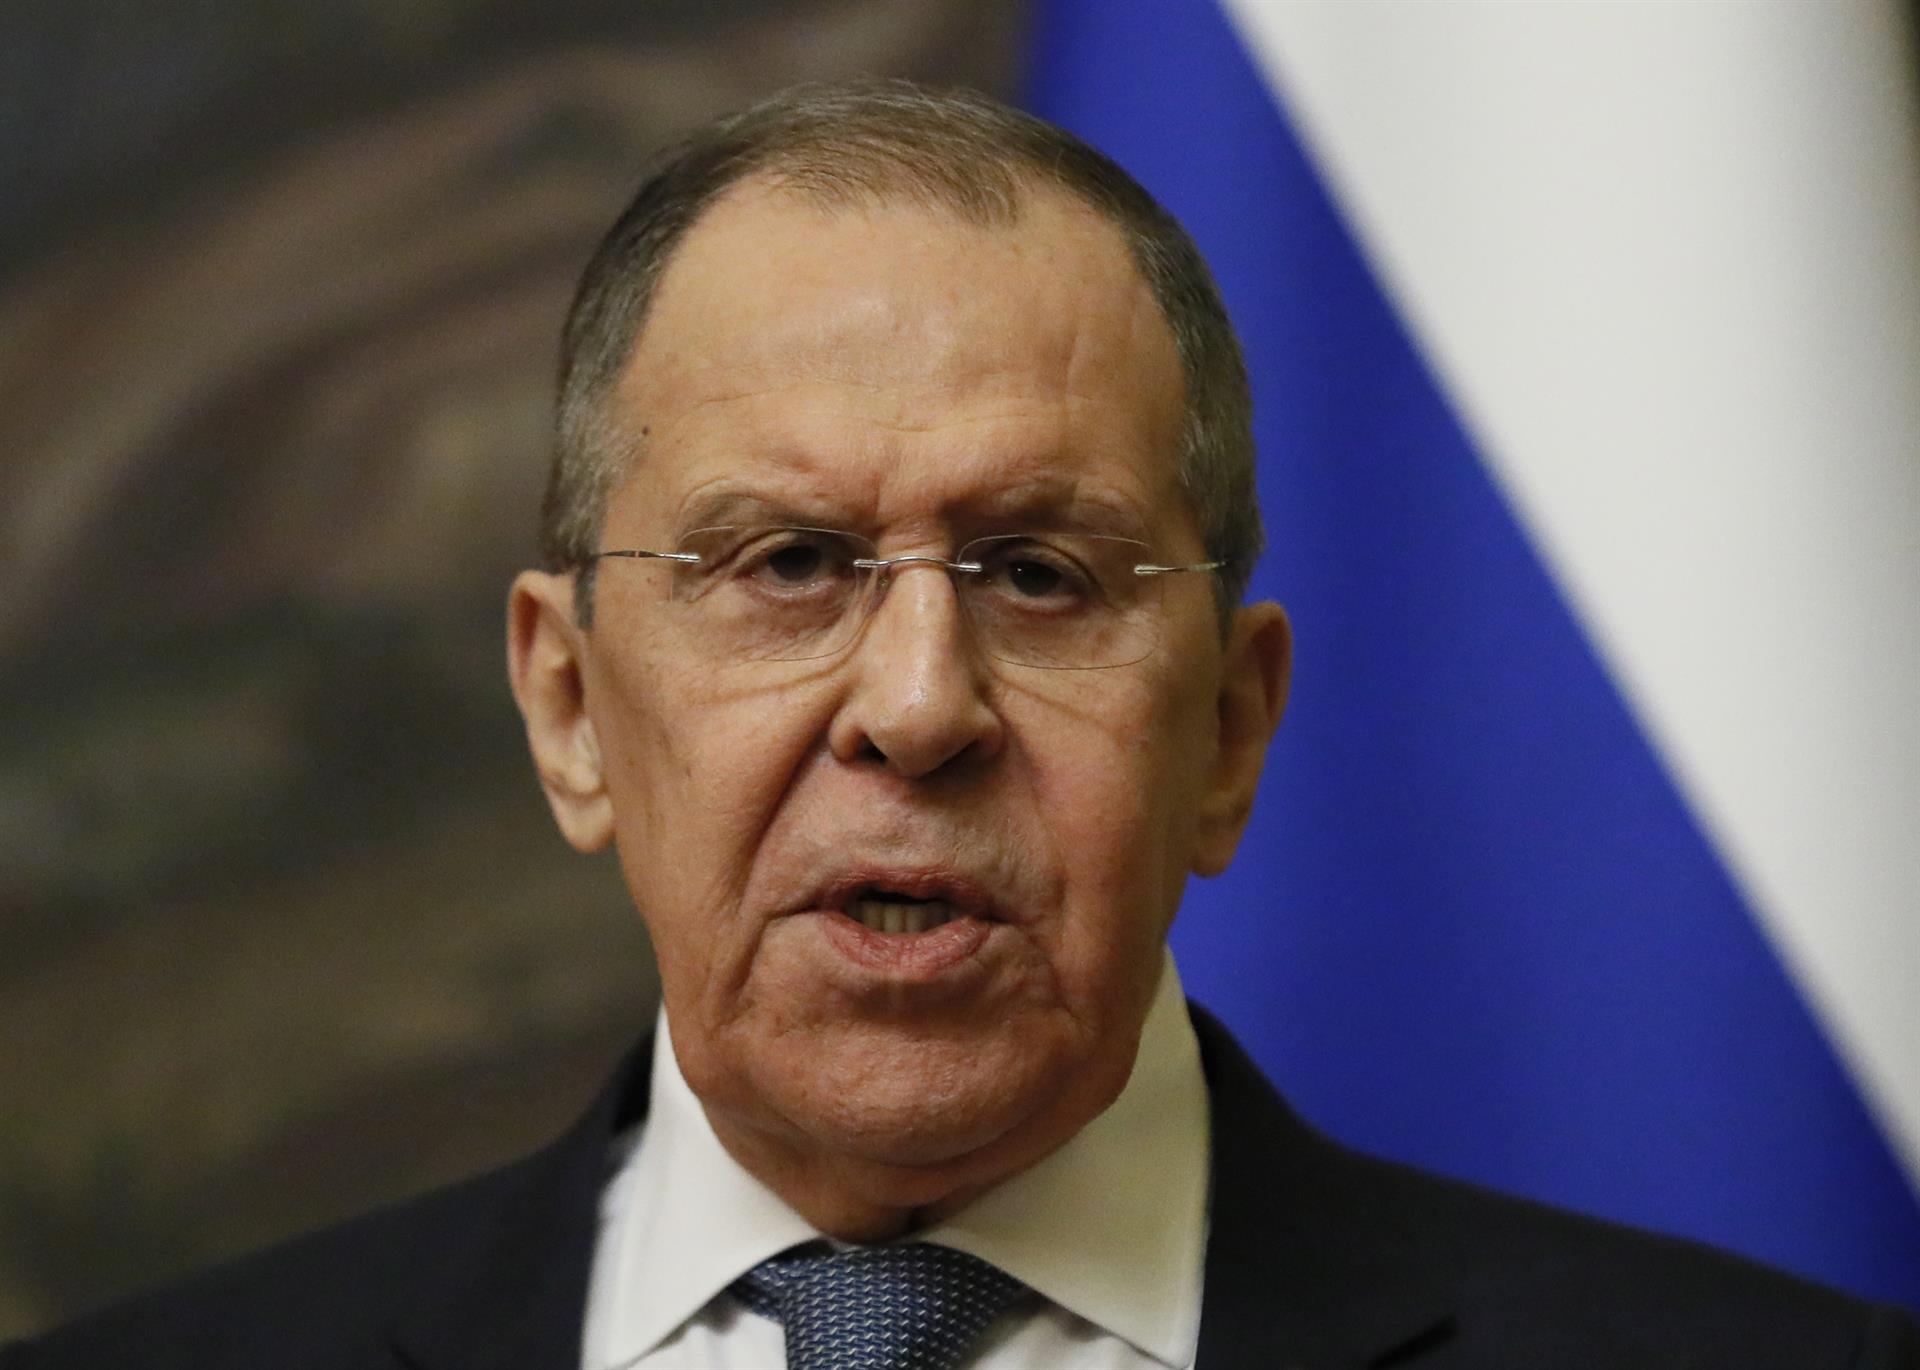 Lavrov se puso bravo porque el jefe de la ONU no asume “posición neutral” ante la invasión rusa a Ucrania